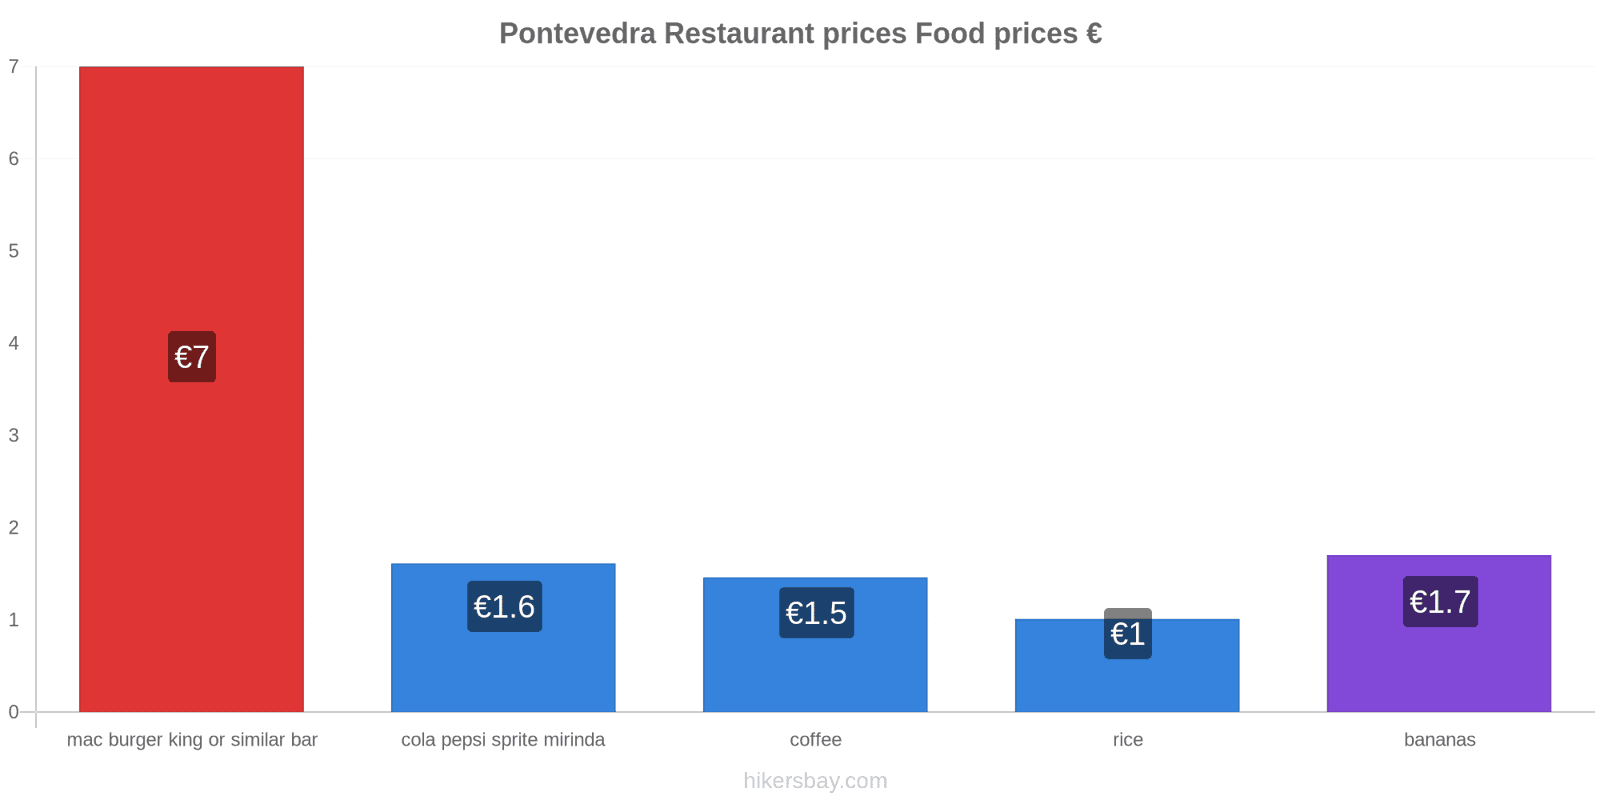 Pontevedra price changes hikersbay.com